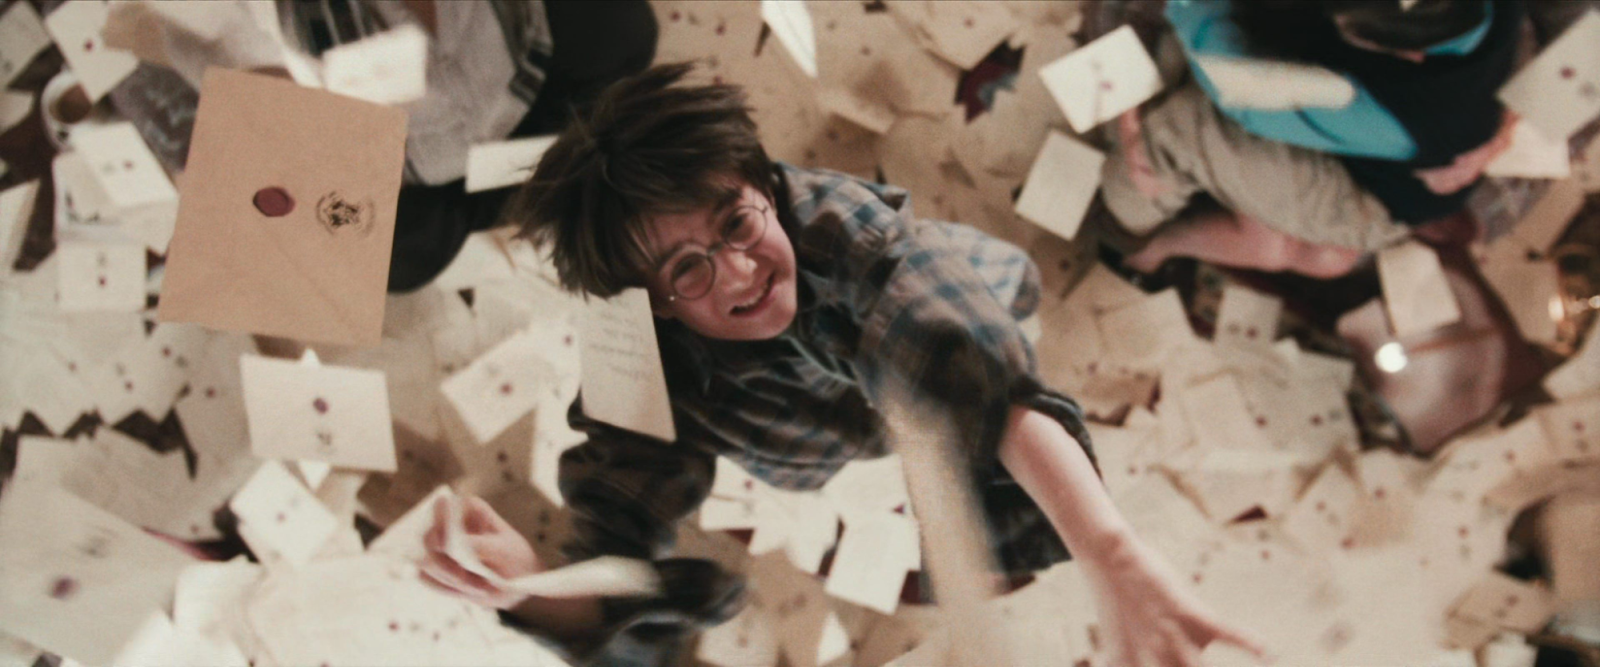 Гарри Поттер ловит письма из Хогвартса